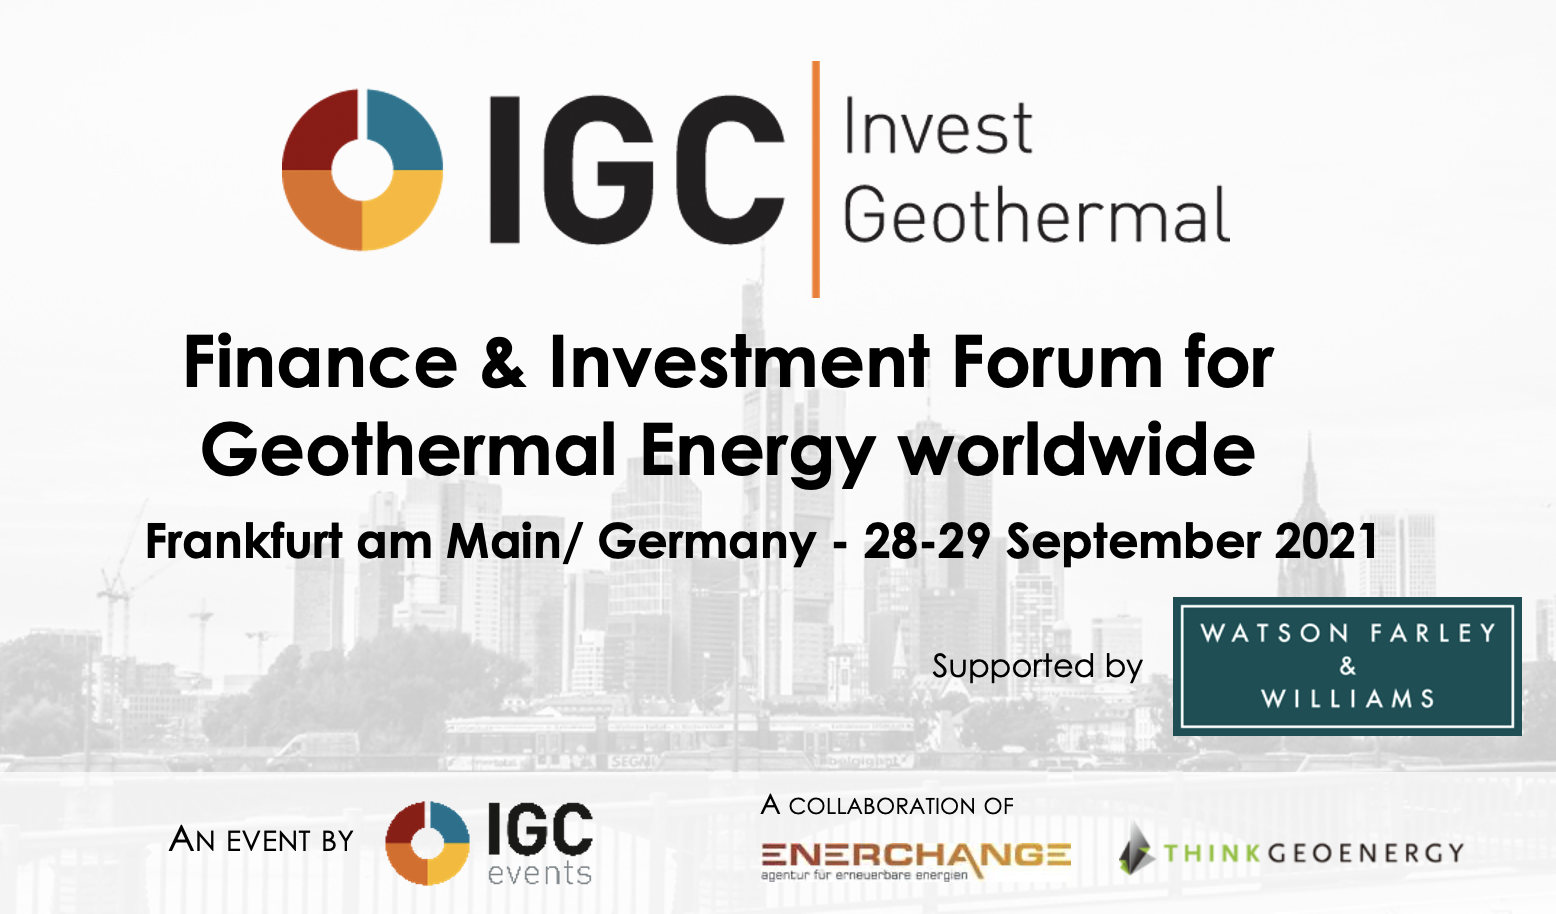 IGC Invest Geothermal, Frankfurt / Deutschland-28.-29. September 2021